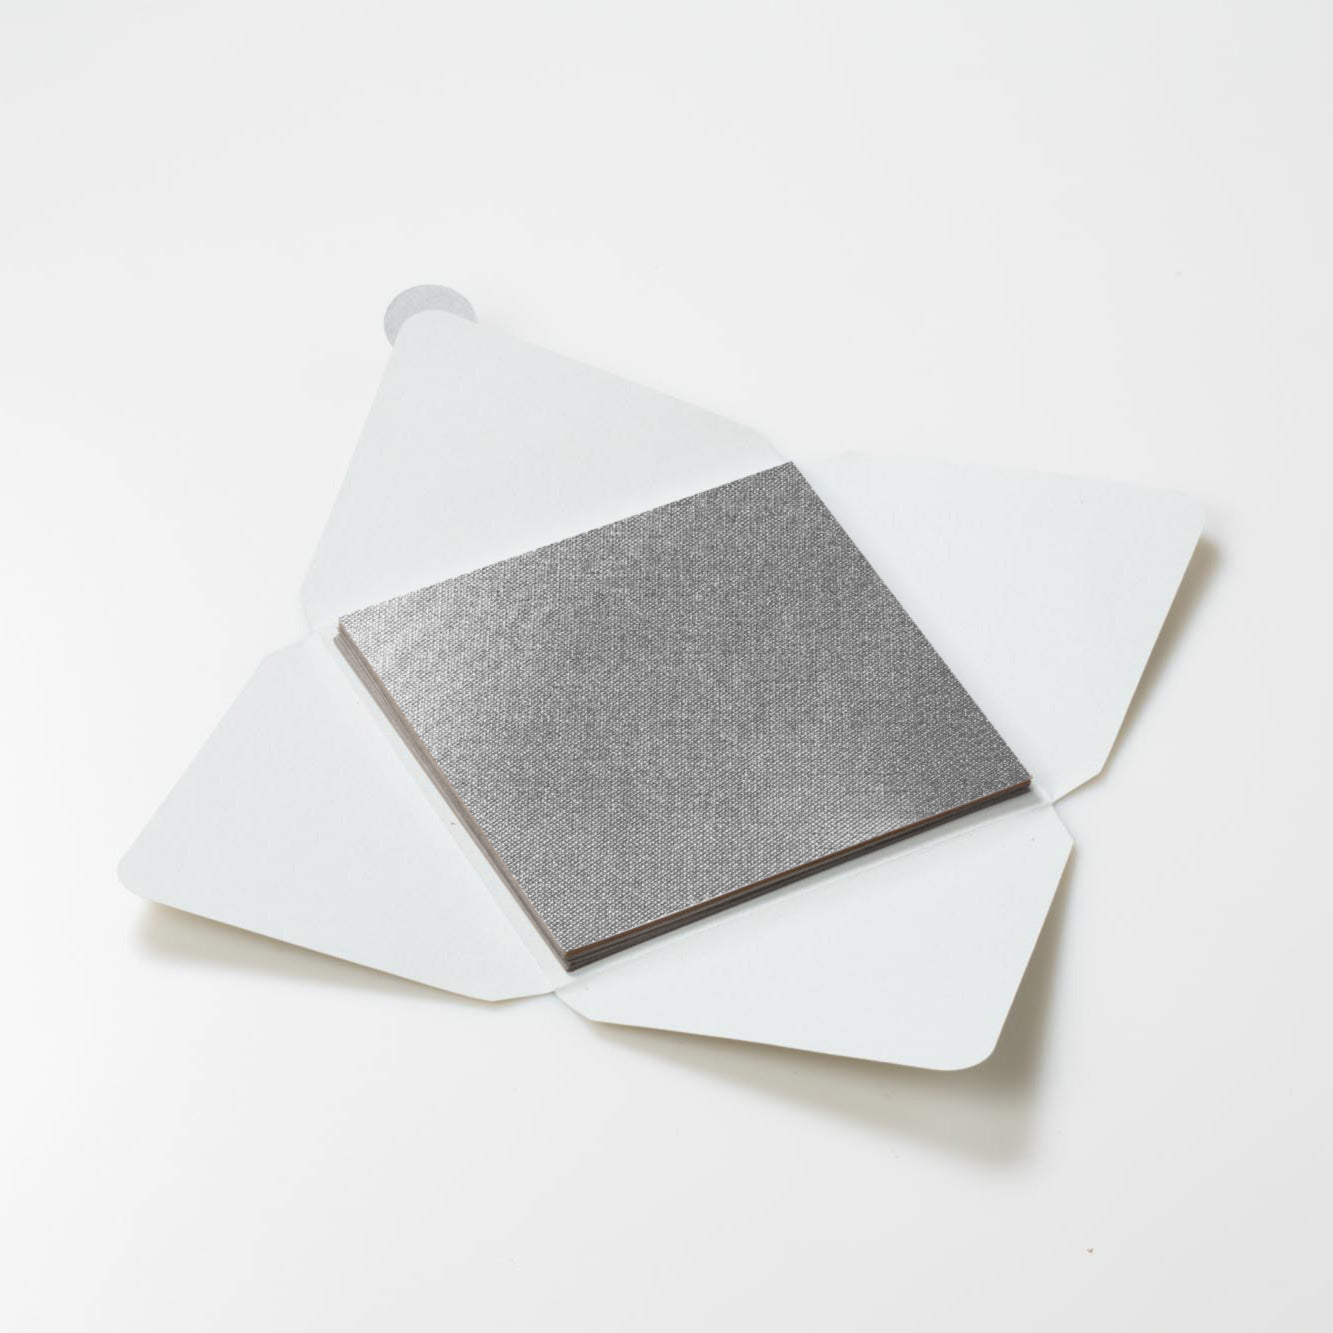 Kit di fogli "Tela Argento Lucido" formato origami 15 cm x 15 cm - Manamant Paper Tales -FGX1850FBM2D